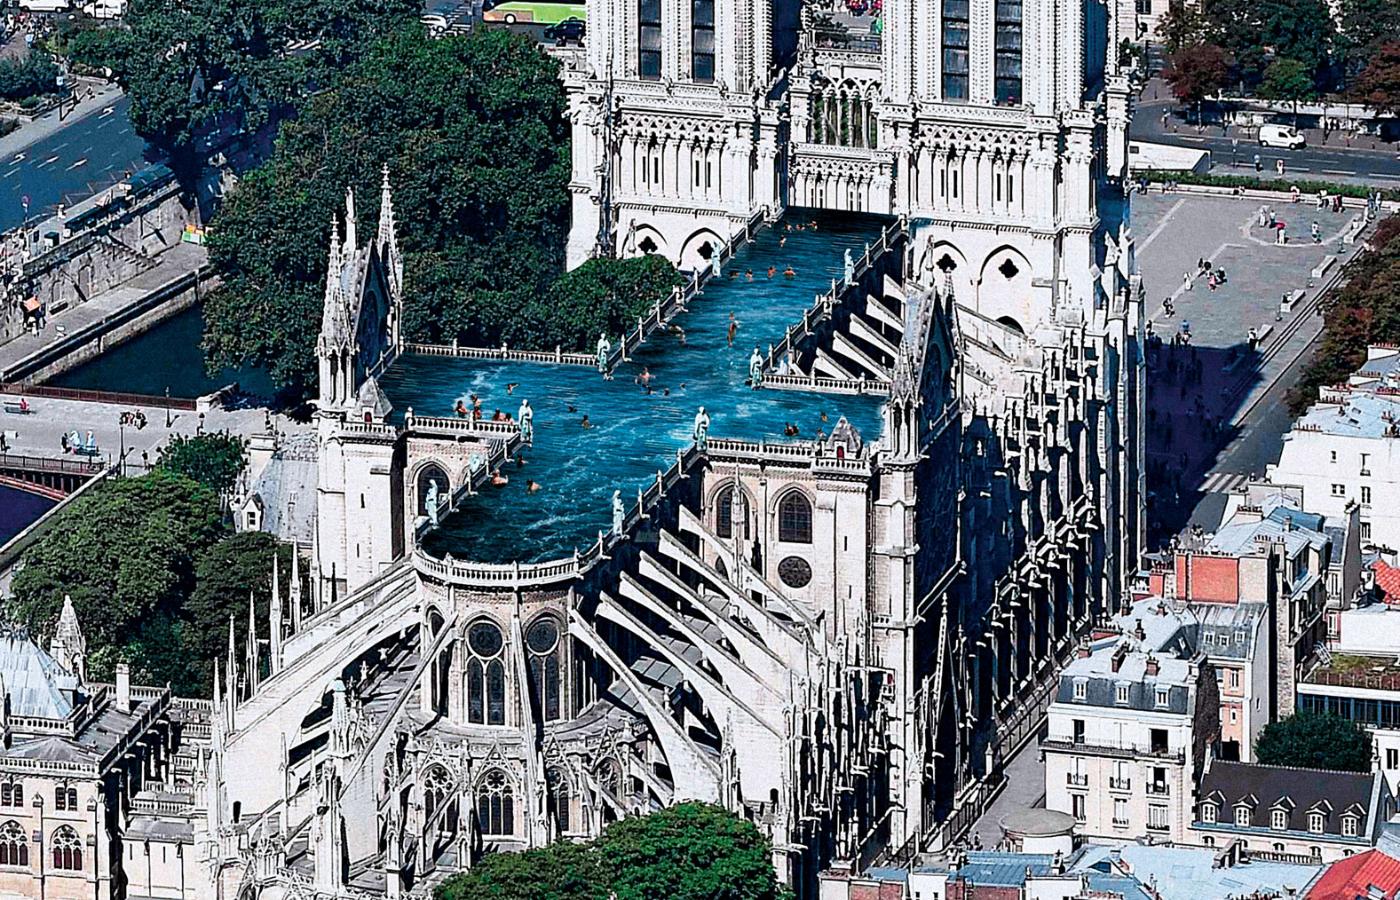 Pracownia UMA ze Sztokholmu chciałaby na dachu katedry umieścić gigantyczny basen w kształcie krzyża.